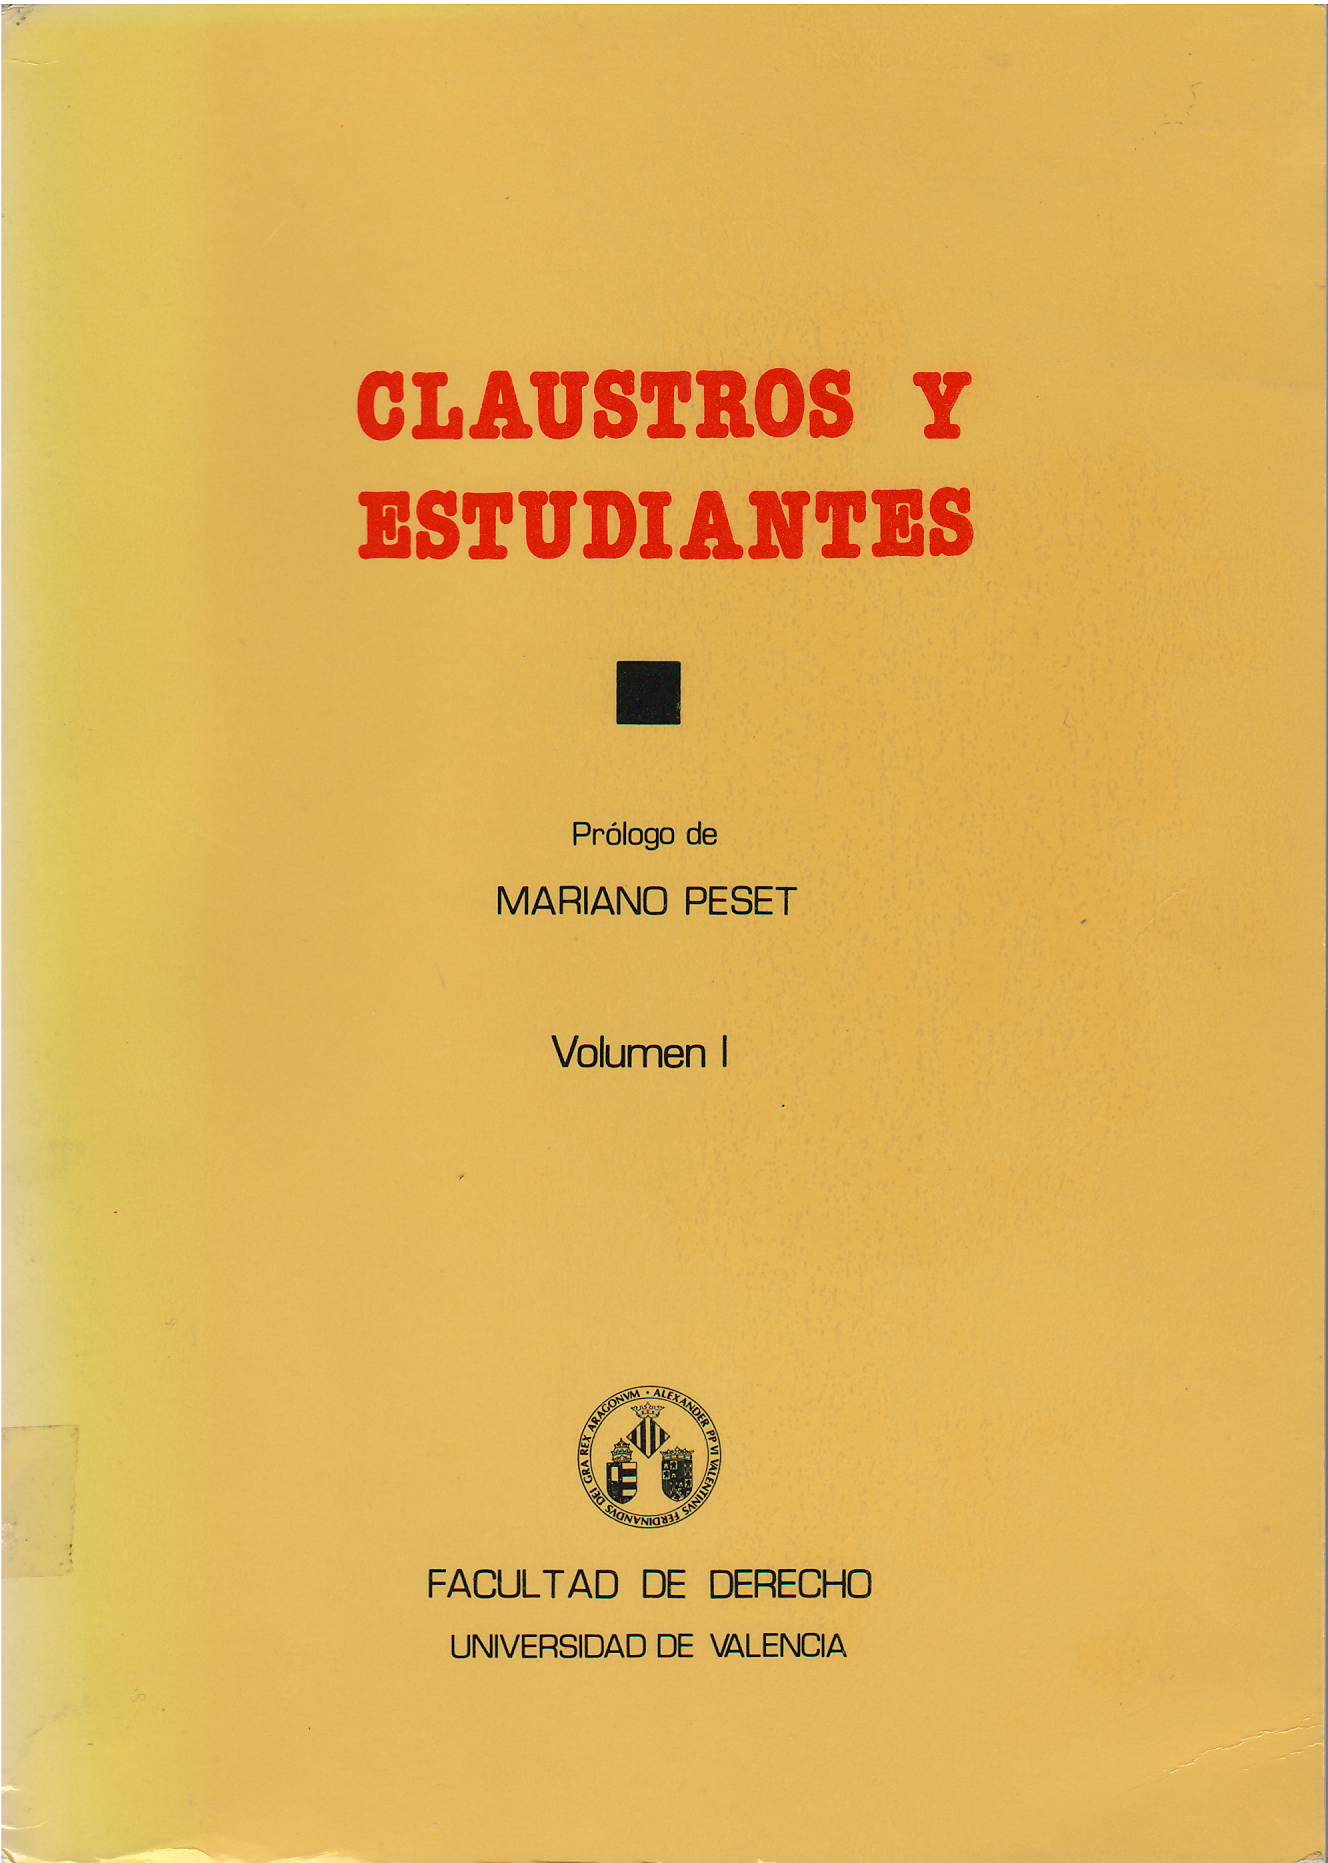 Imagen de portada del libro Claustros y estudiantes